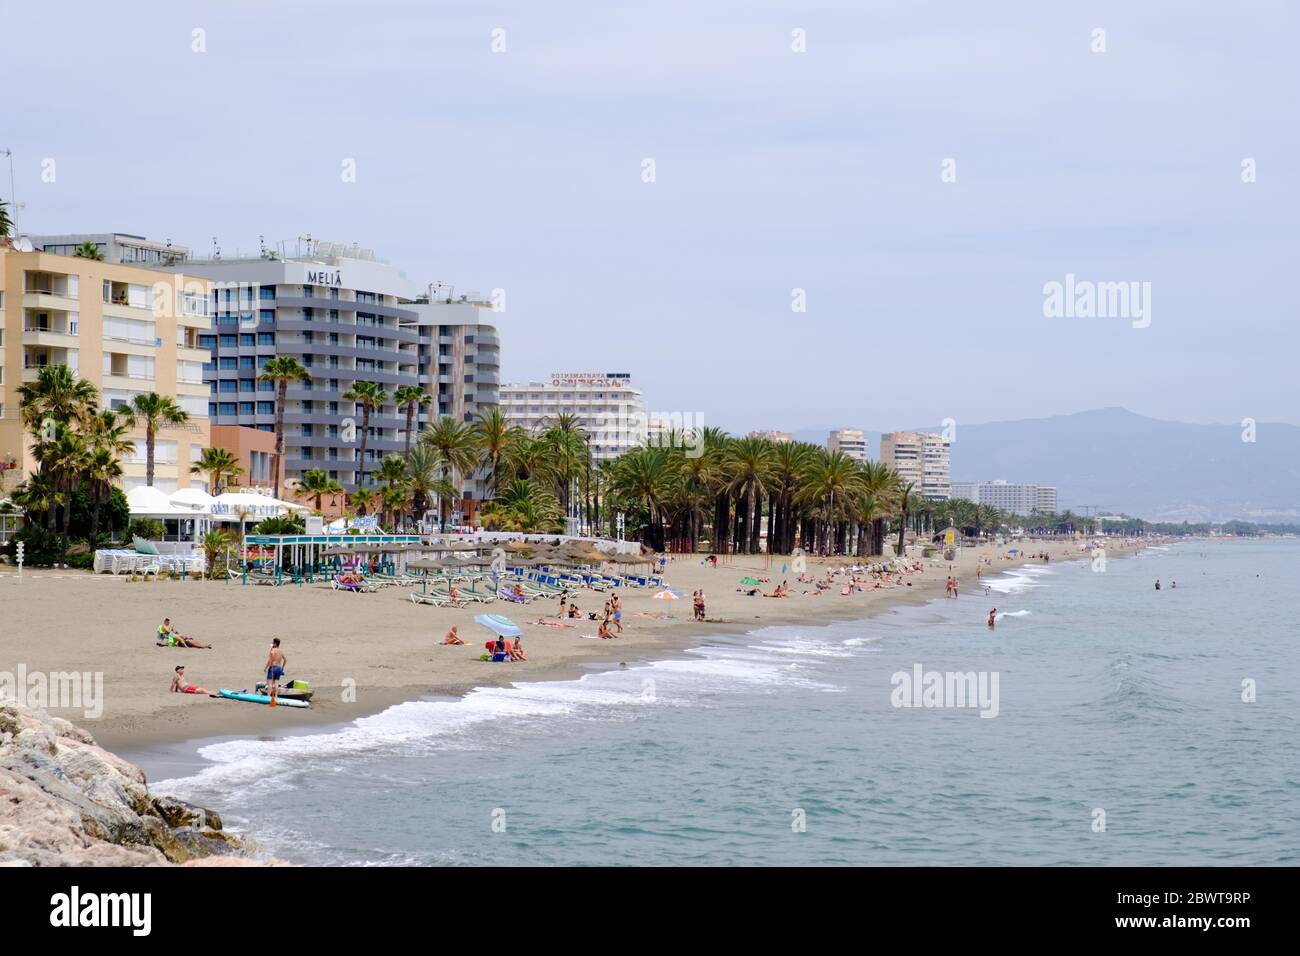 Phase 2 du Covid-19 en Espagne. Assouplissement des restrictions sur la plage de Torremolinos, Malaga, Andalousie, Costa del sol, Espagne, Europe Banque D'Images